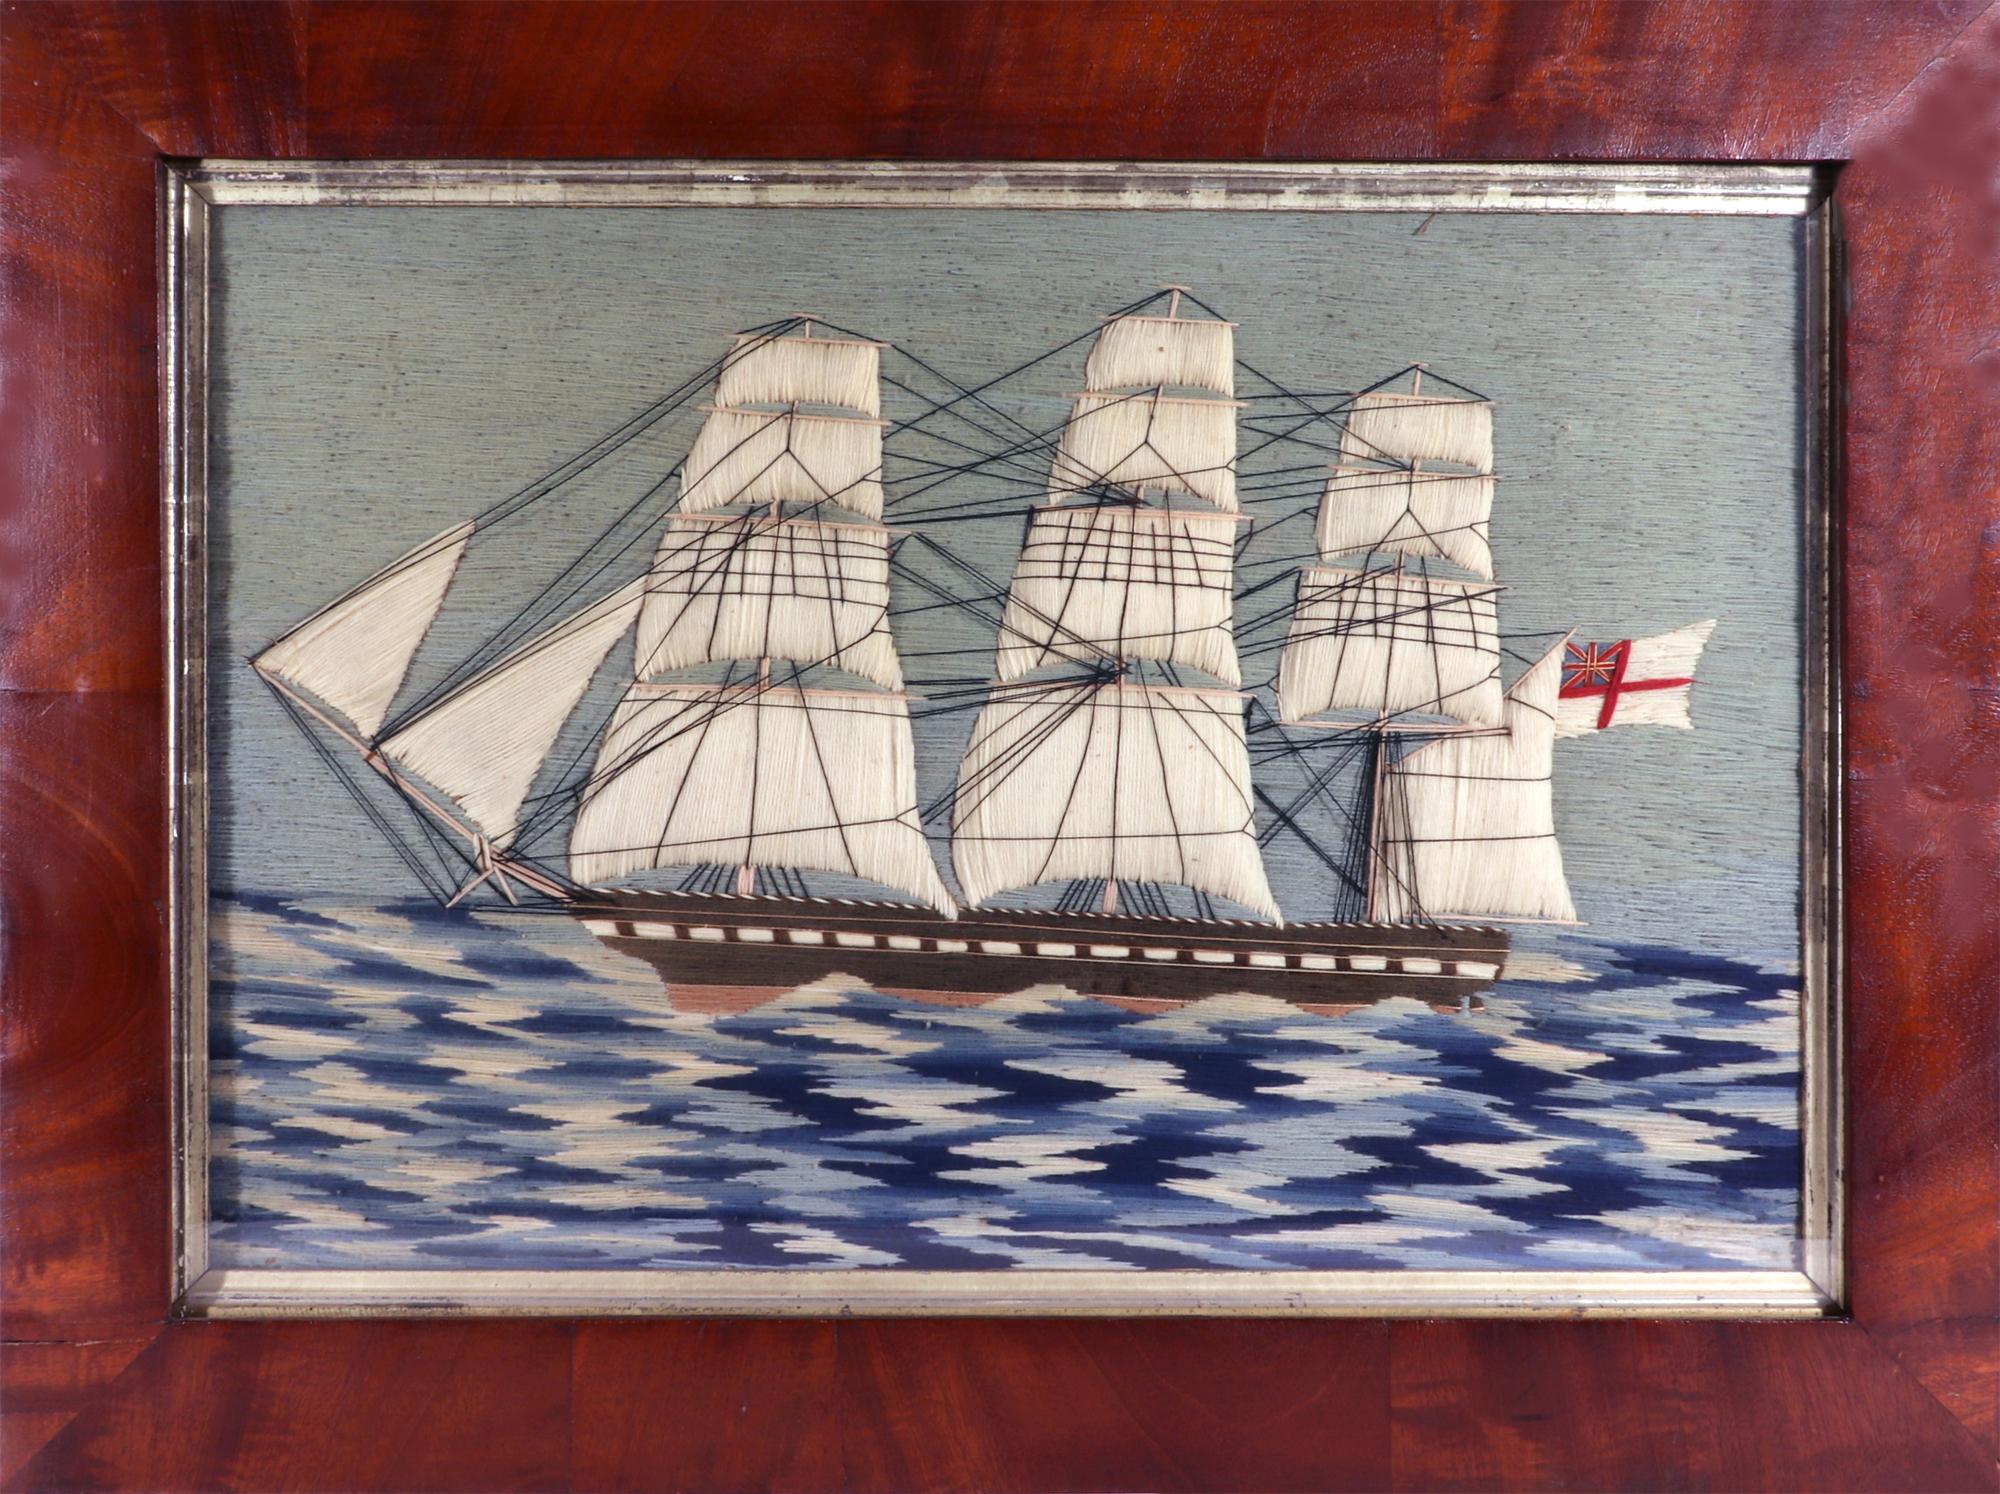 Matrosenwolle der Royal Navy auf dem Schachbrettmeer,
CIRCA 1865

Die britische Seemannswolle zeigt die Backbordansicht eines Dreimasters mit weißen Trapunto-Segeln auf rauer See, die schachbrettartig in Blautönen dargestellt ist.  Das Schiff mit